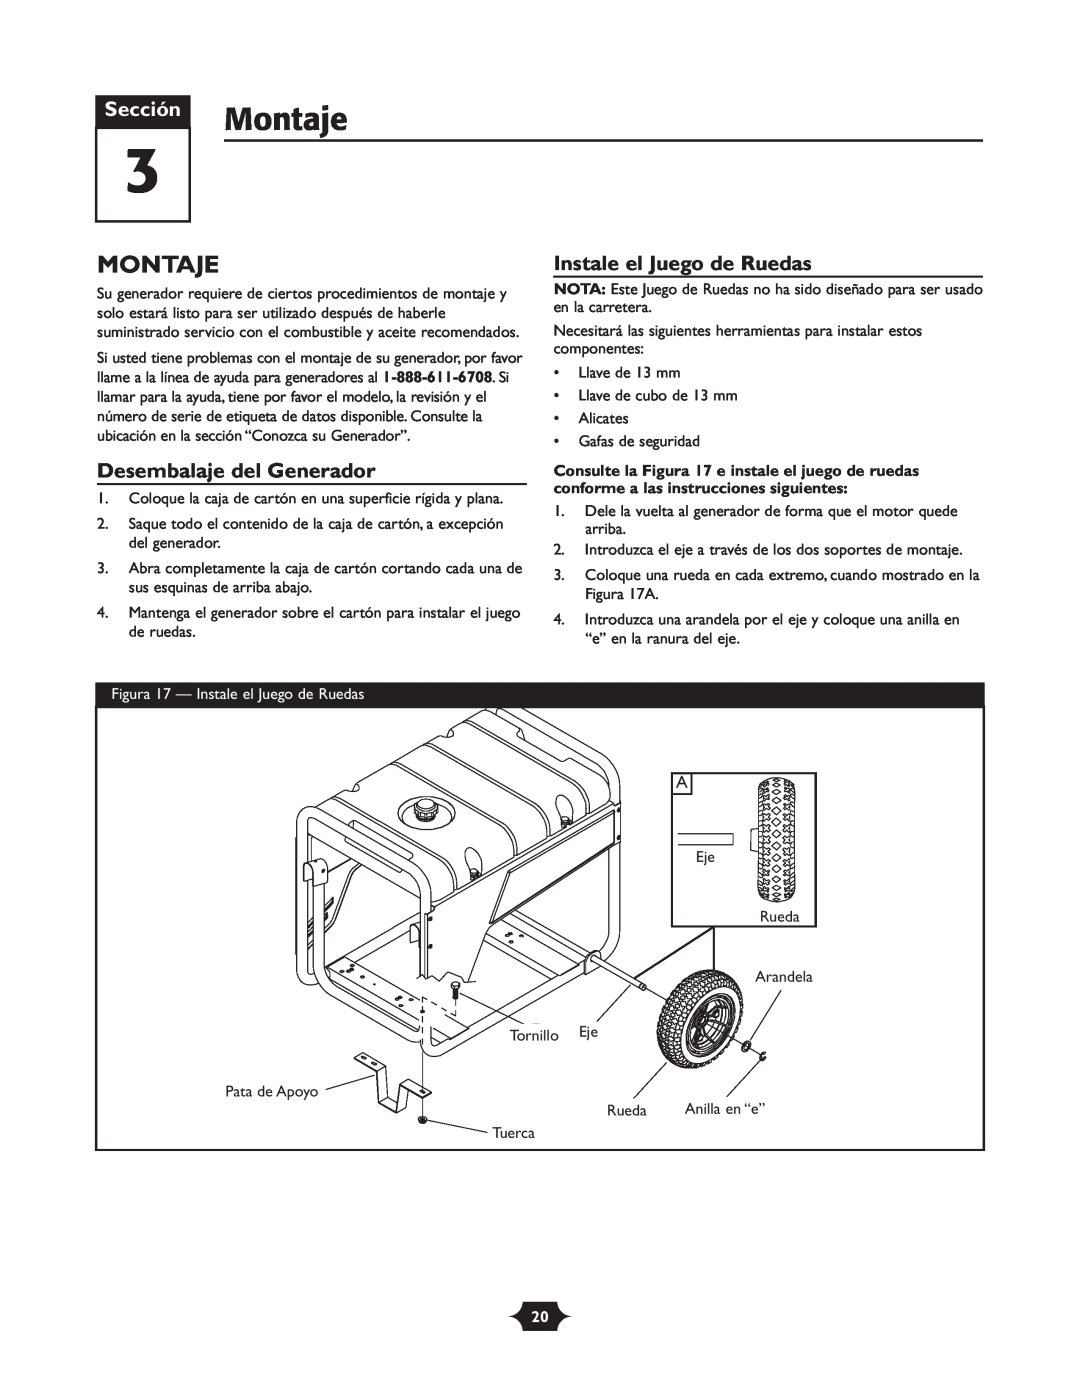 Troy-Bilt 030245 manual Montaje, Desembalaje del Generador, Instale el Juego de Ruedas, Sección 